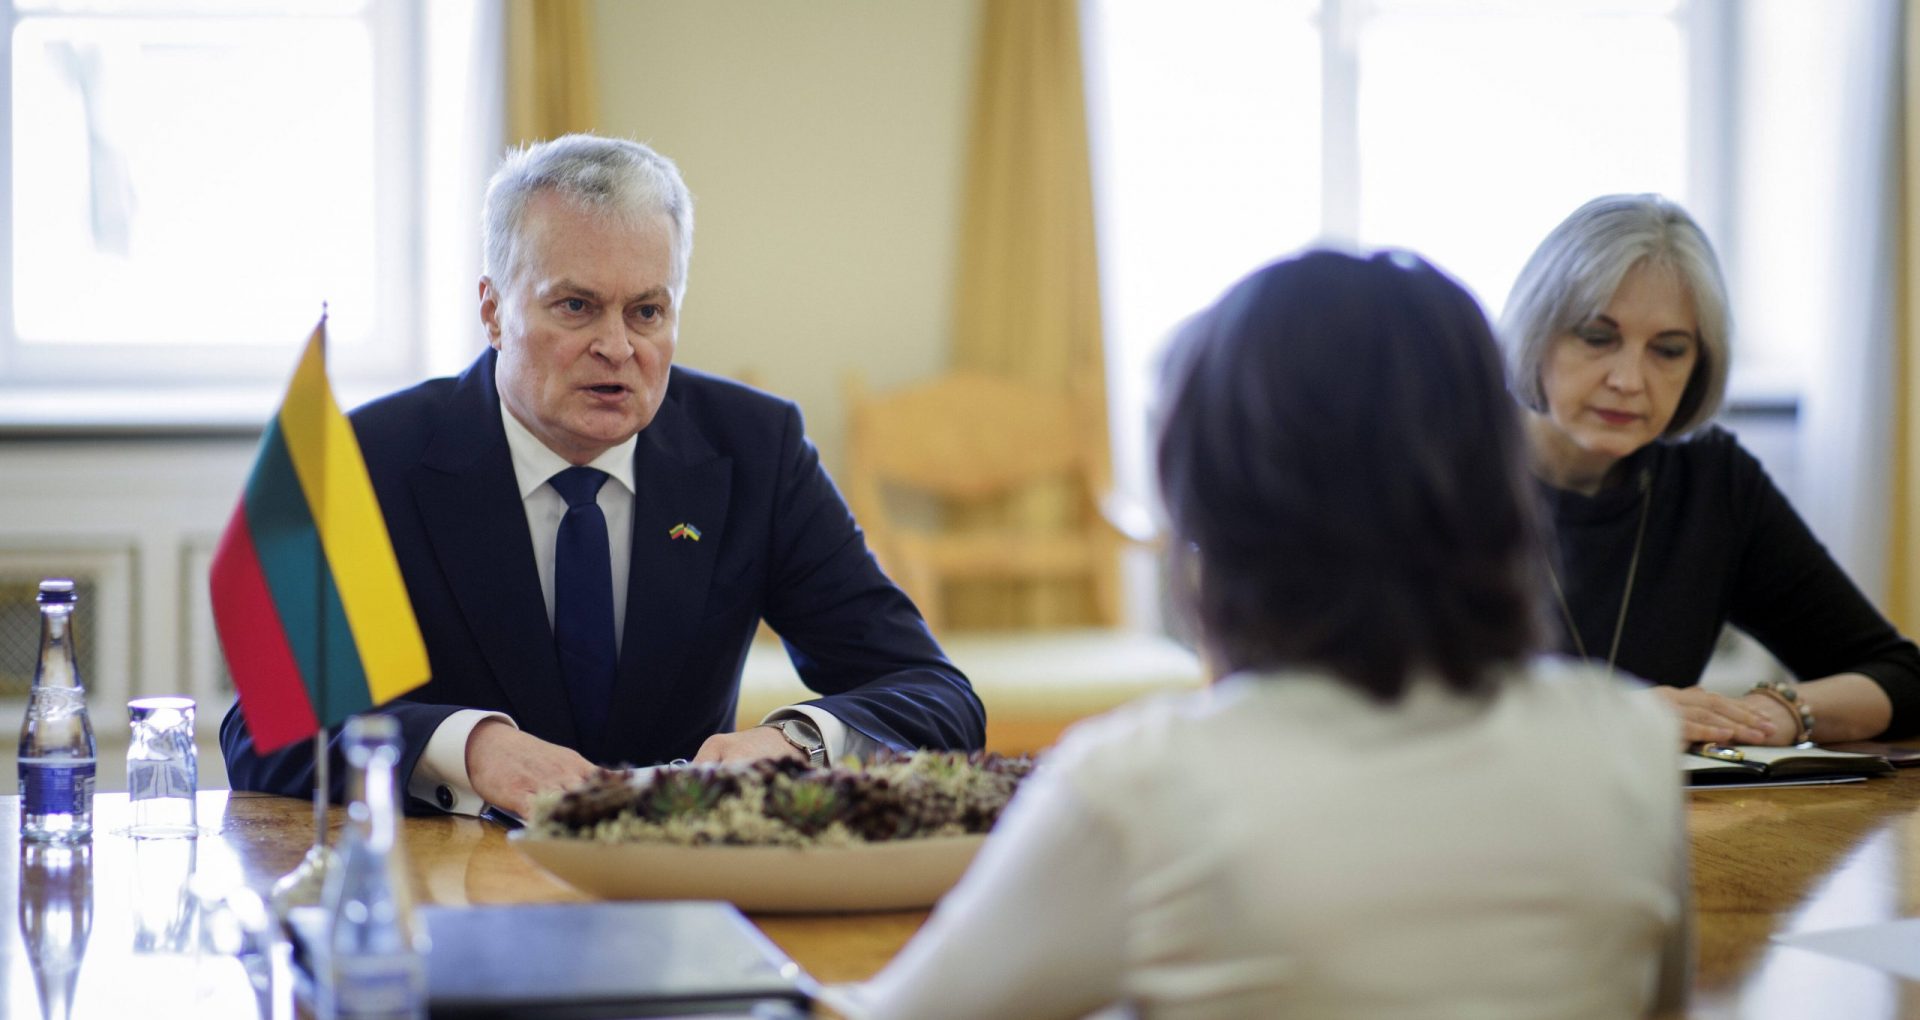 Șefa statului a avut o convorbire telefonică cu președintele Lituaniei. Președinția: „Au discutat despre recomandarea Comisiei Europene de a acorda R. Moldova statutul de țară candidată la UE”